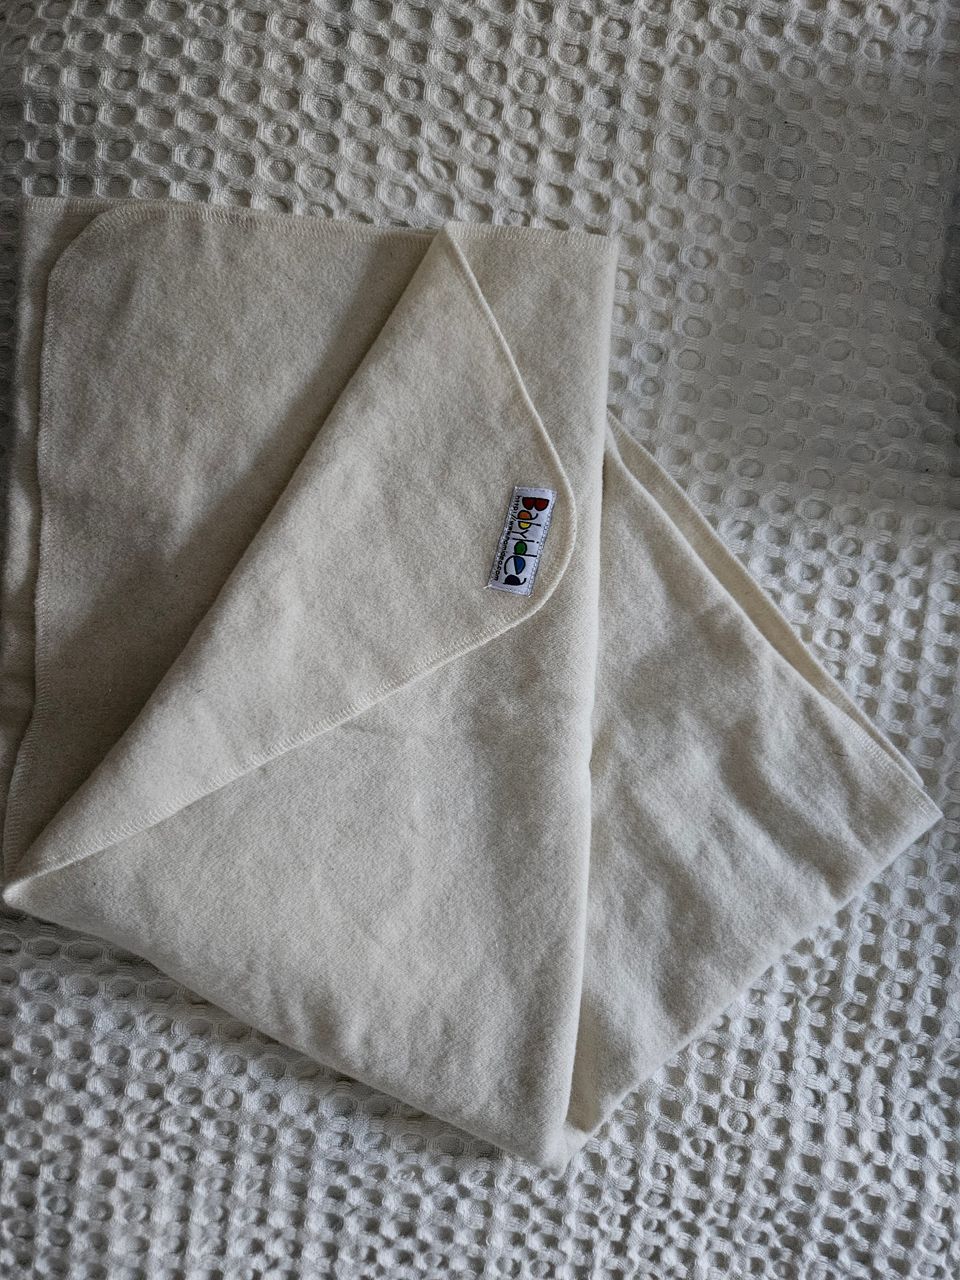 Babyidea wool fleece blanket